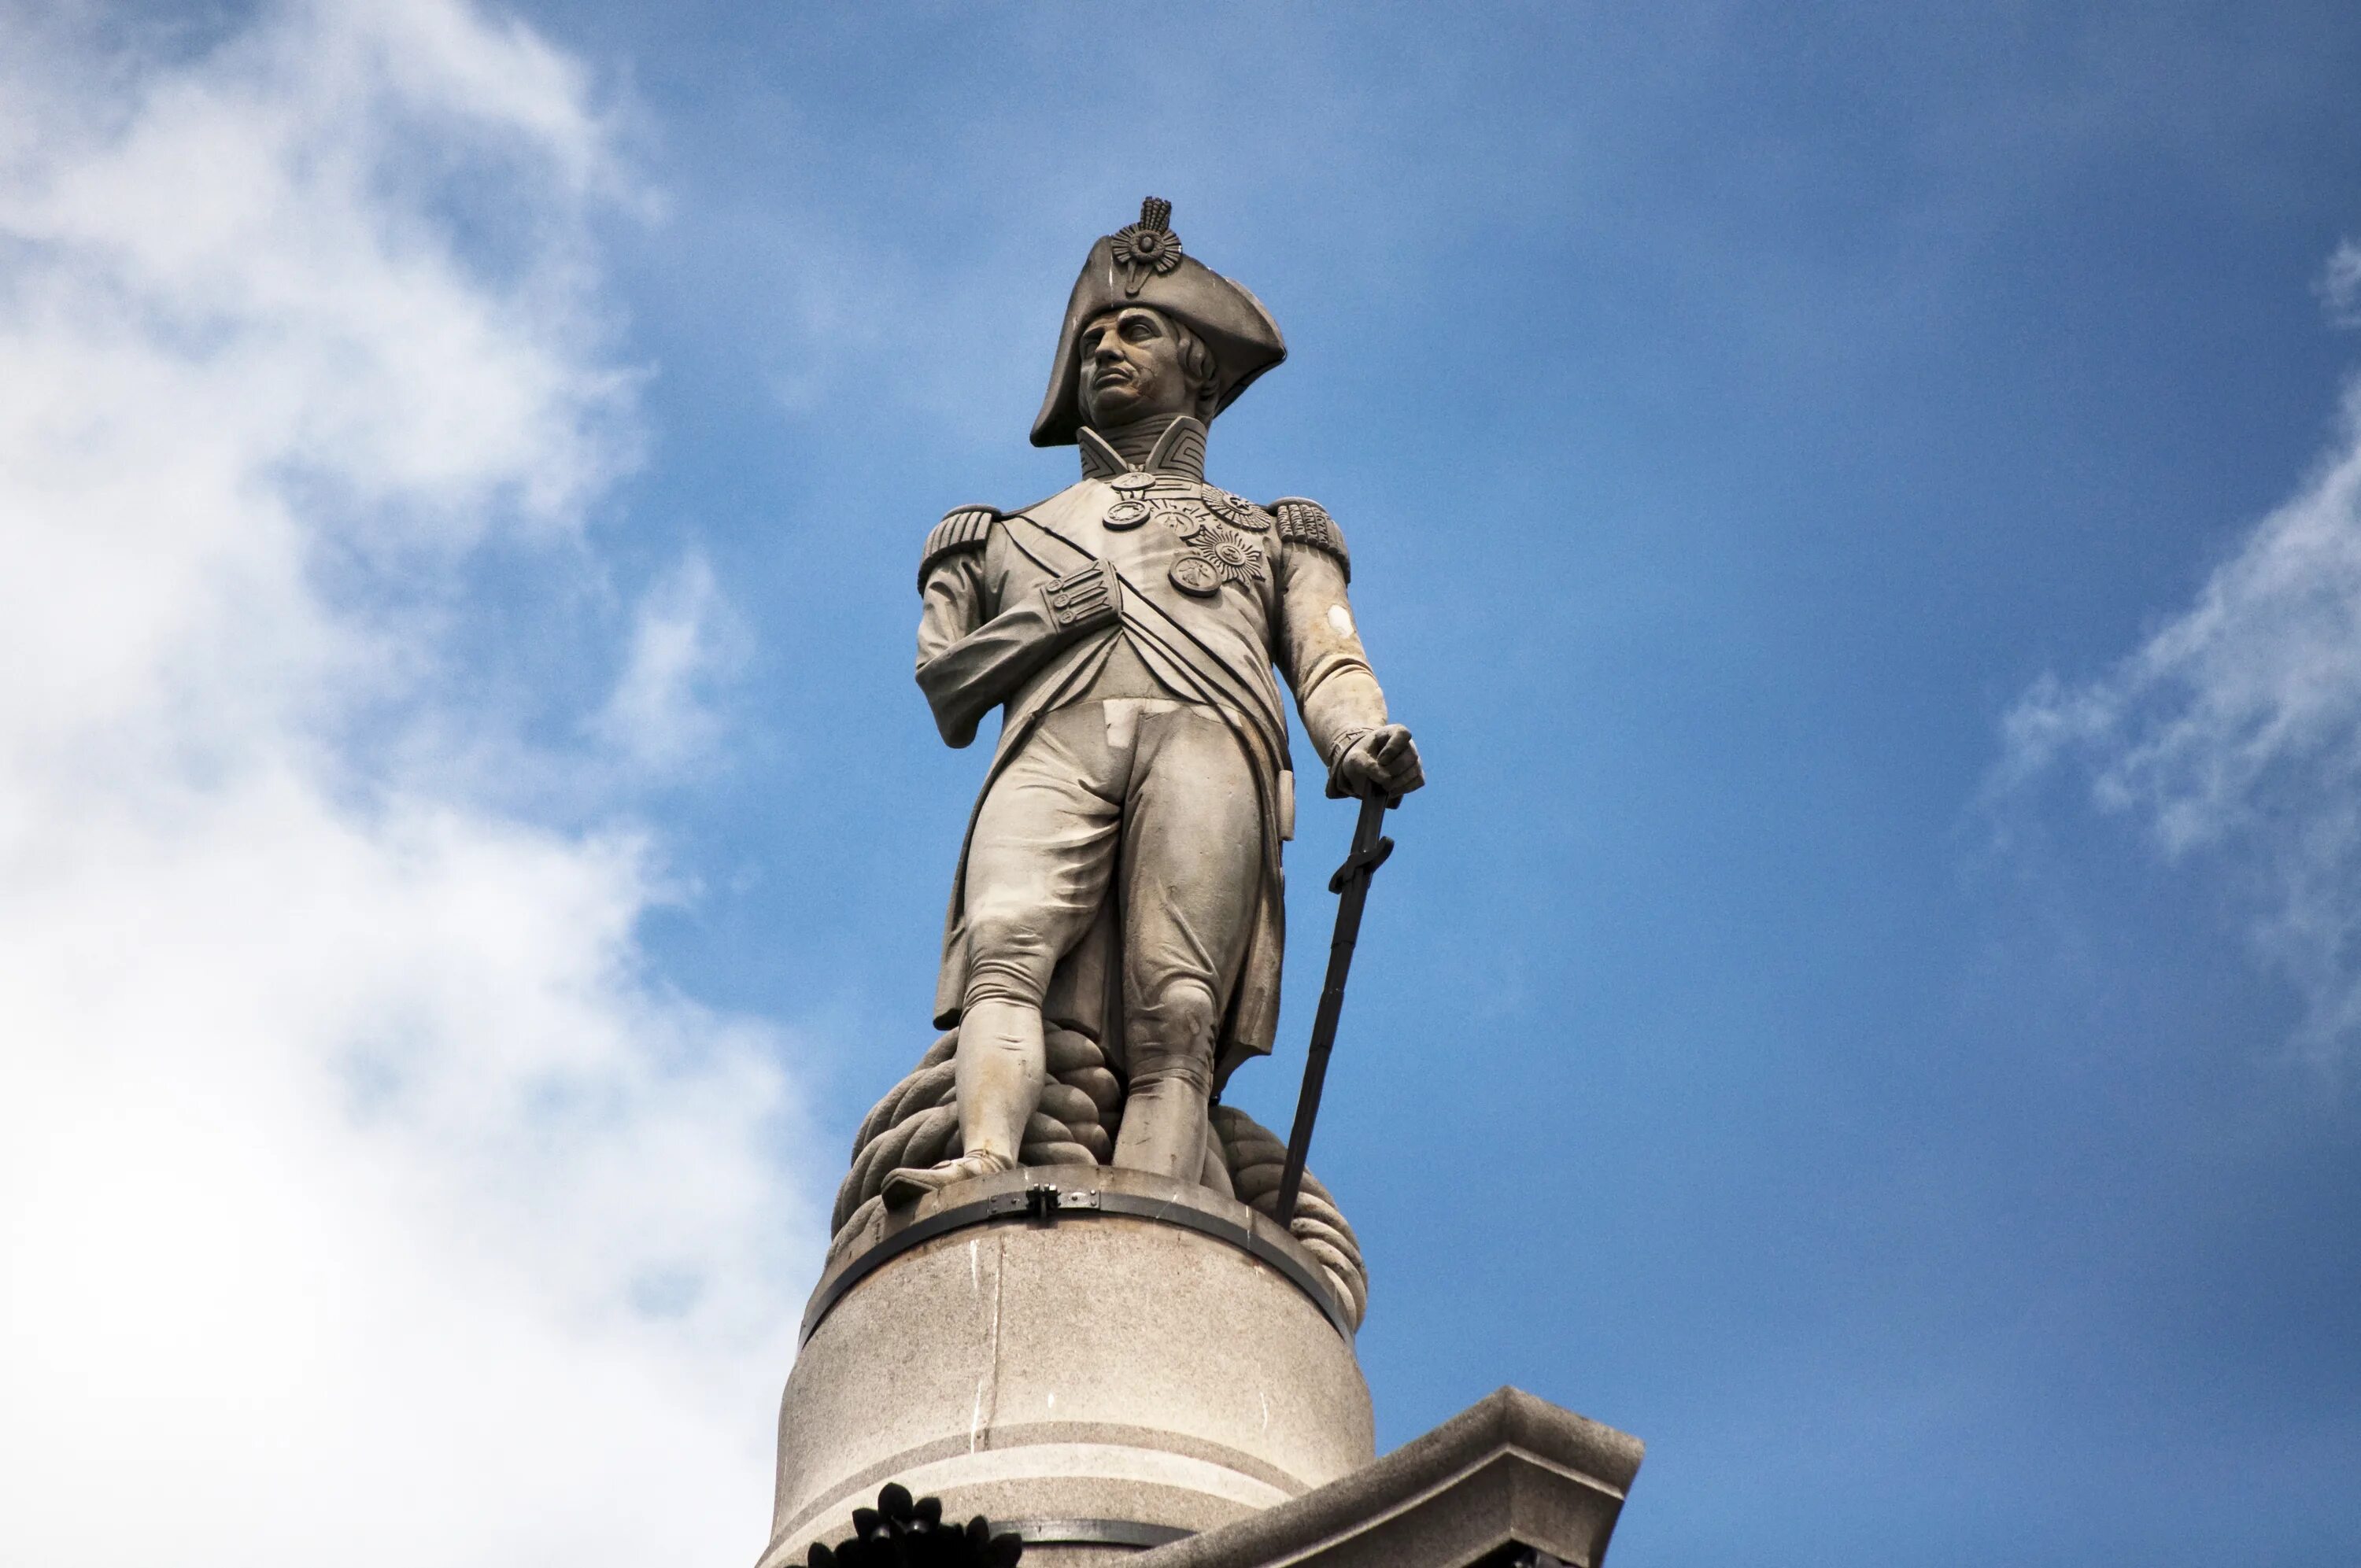 Статуя Адмирала Нельсона. Колонна Адмирала Нельсона. Памятник адмиралу Нельсону в Лондоне. Статуя Адмирала Нельсона в Лондоне. Нельсон лондон